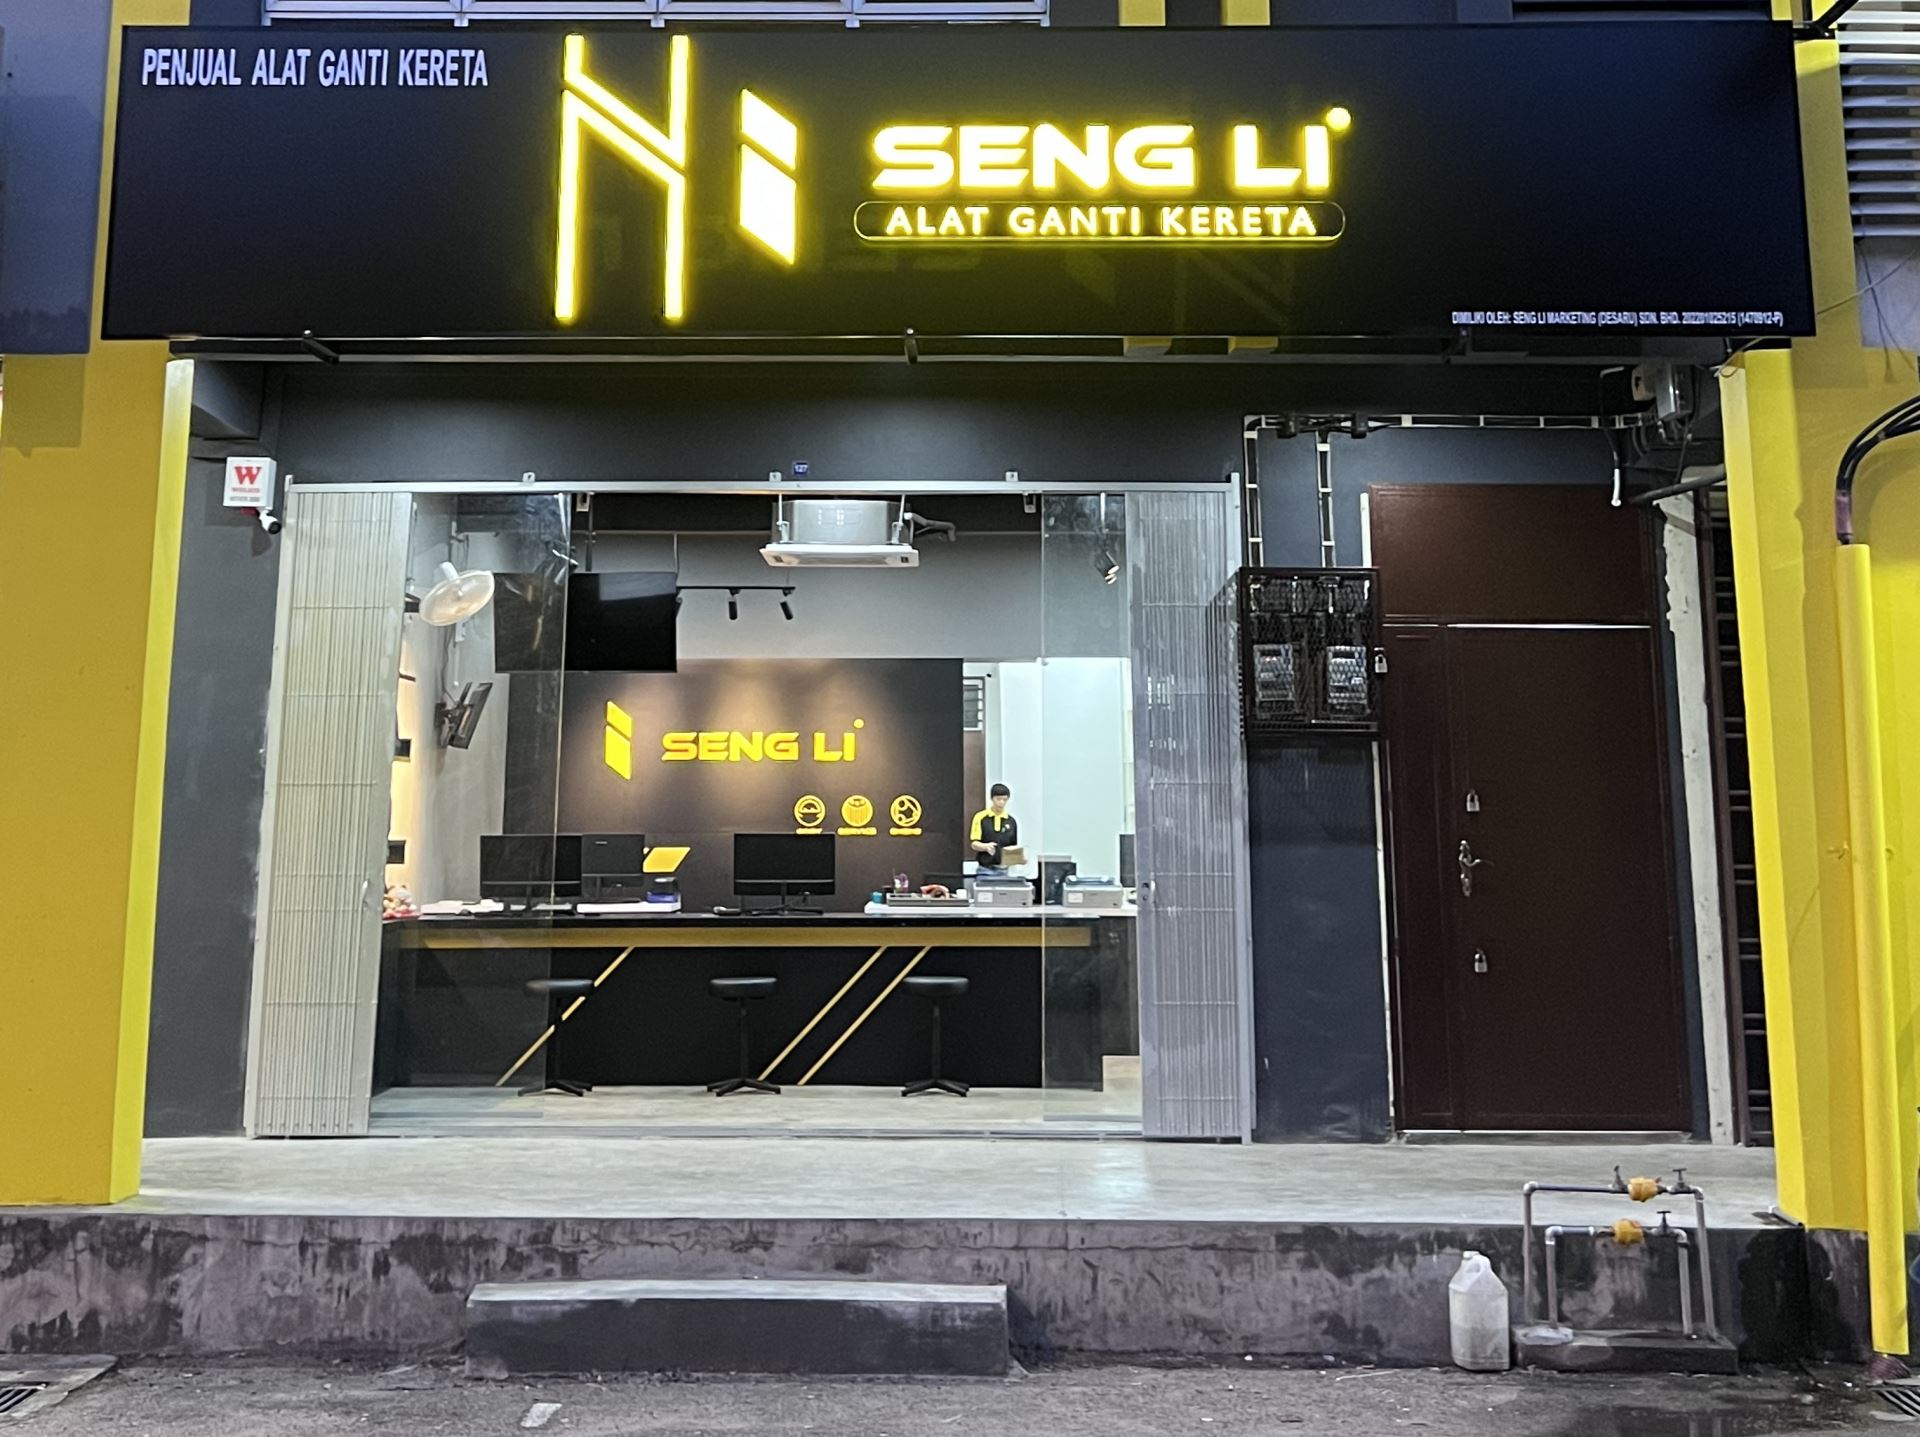 12th Seng Li branch at Desaru